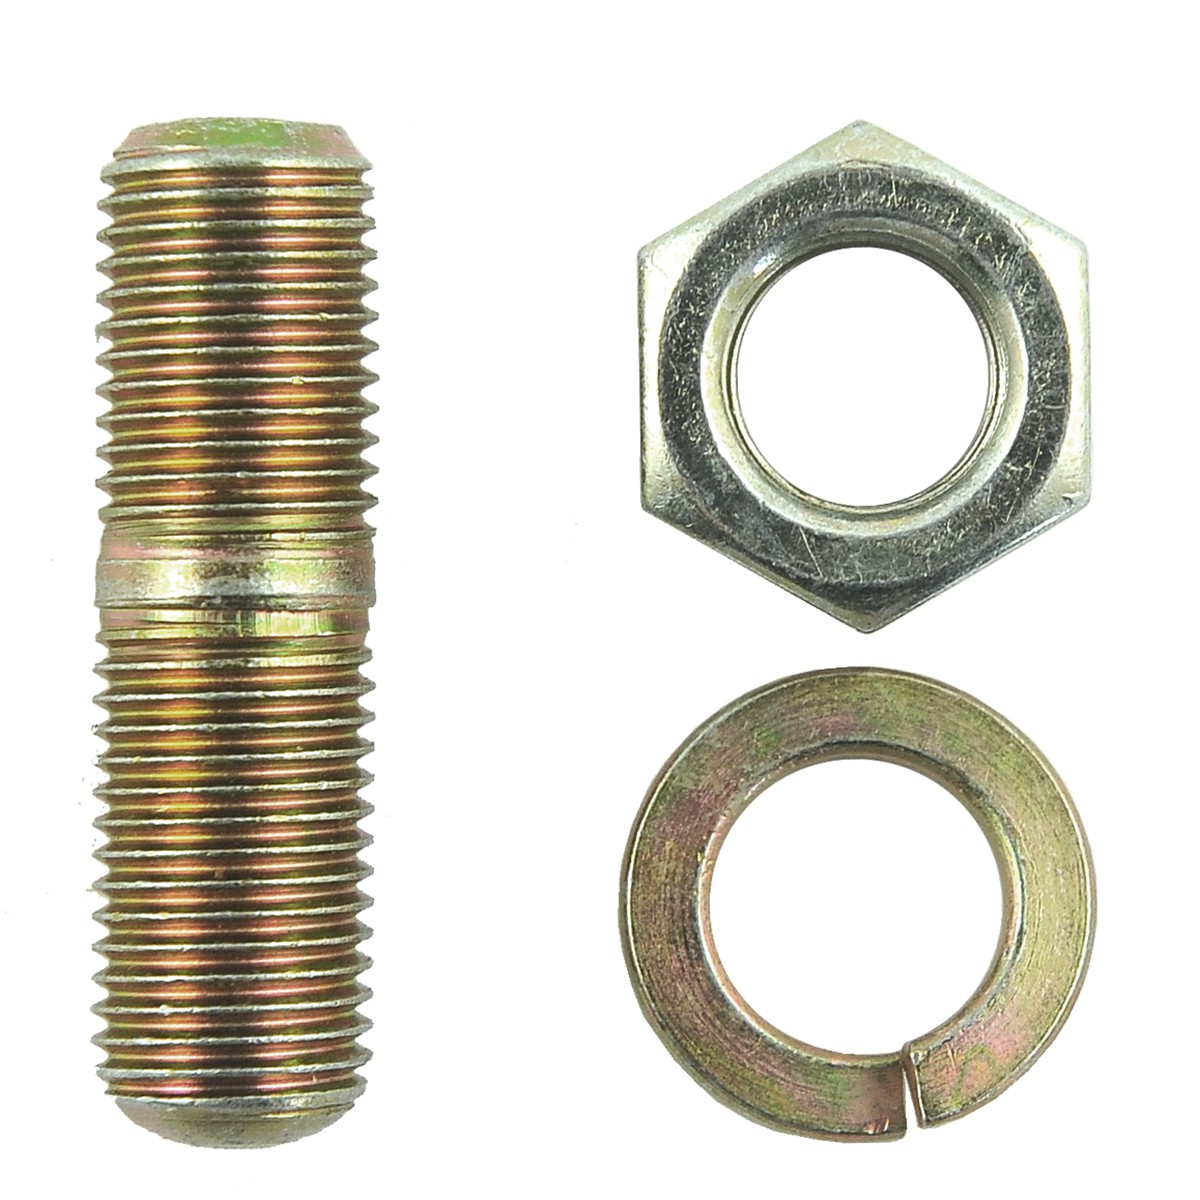 Wheel hub bolt / M14 x 50 x 1.5 / Kubota L3408 / 01513-00825 / 5-25-144-12